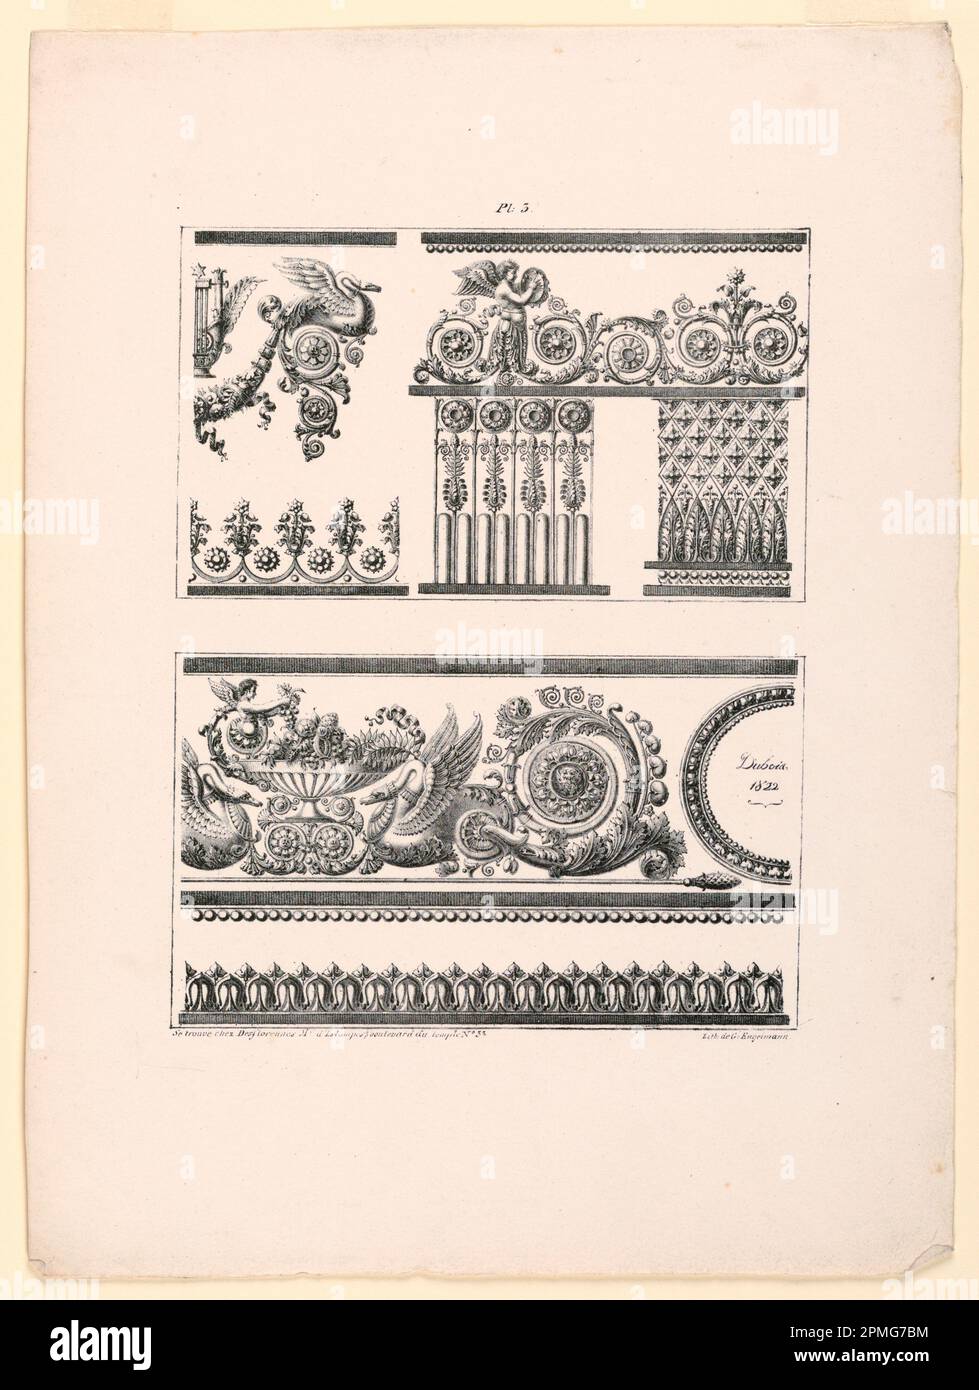 Print, Frieze und Ornamental Bor; After Jean DuBois (Französisch, ca. 1750 – nach 1801); gedruckt von Gottfried Engelmann (1788 – 1839); Veröffentlicht von Desflorennes; Frankreich; Lithografieunterstützung: Weißes gewebtes Papier; 35,9 x 26,9 cm (14 1/8 x 10 9/16 Zoll) Platemark/REPEAT: 24,5 x 18,7 cm (9 5/8 x 7 3/8 Zoll) Matte: 45,7 x 35,6 cm (18 x 14 Zoll) Stockfoto